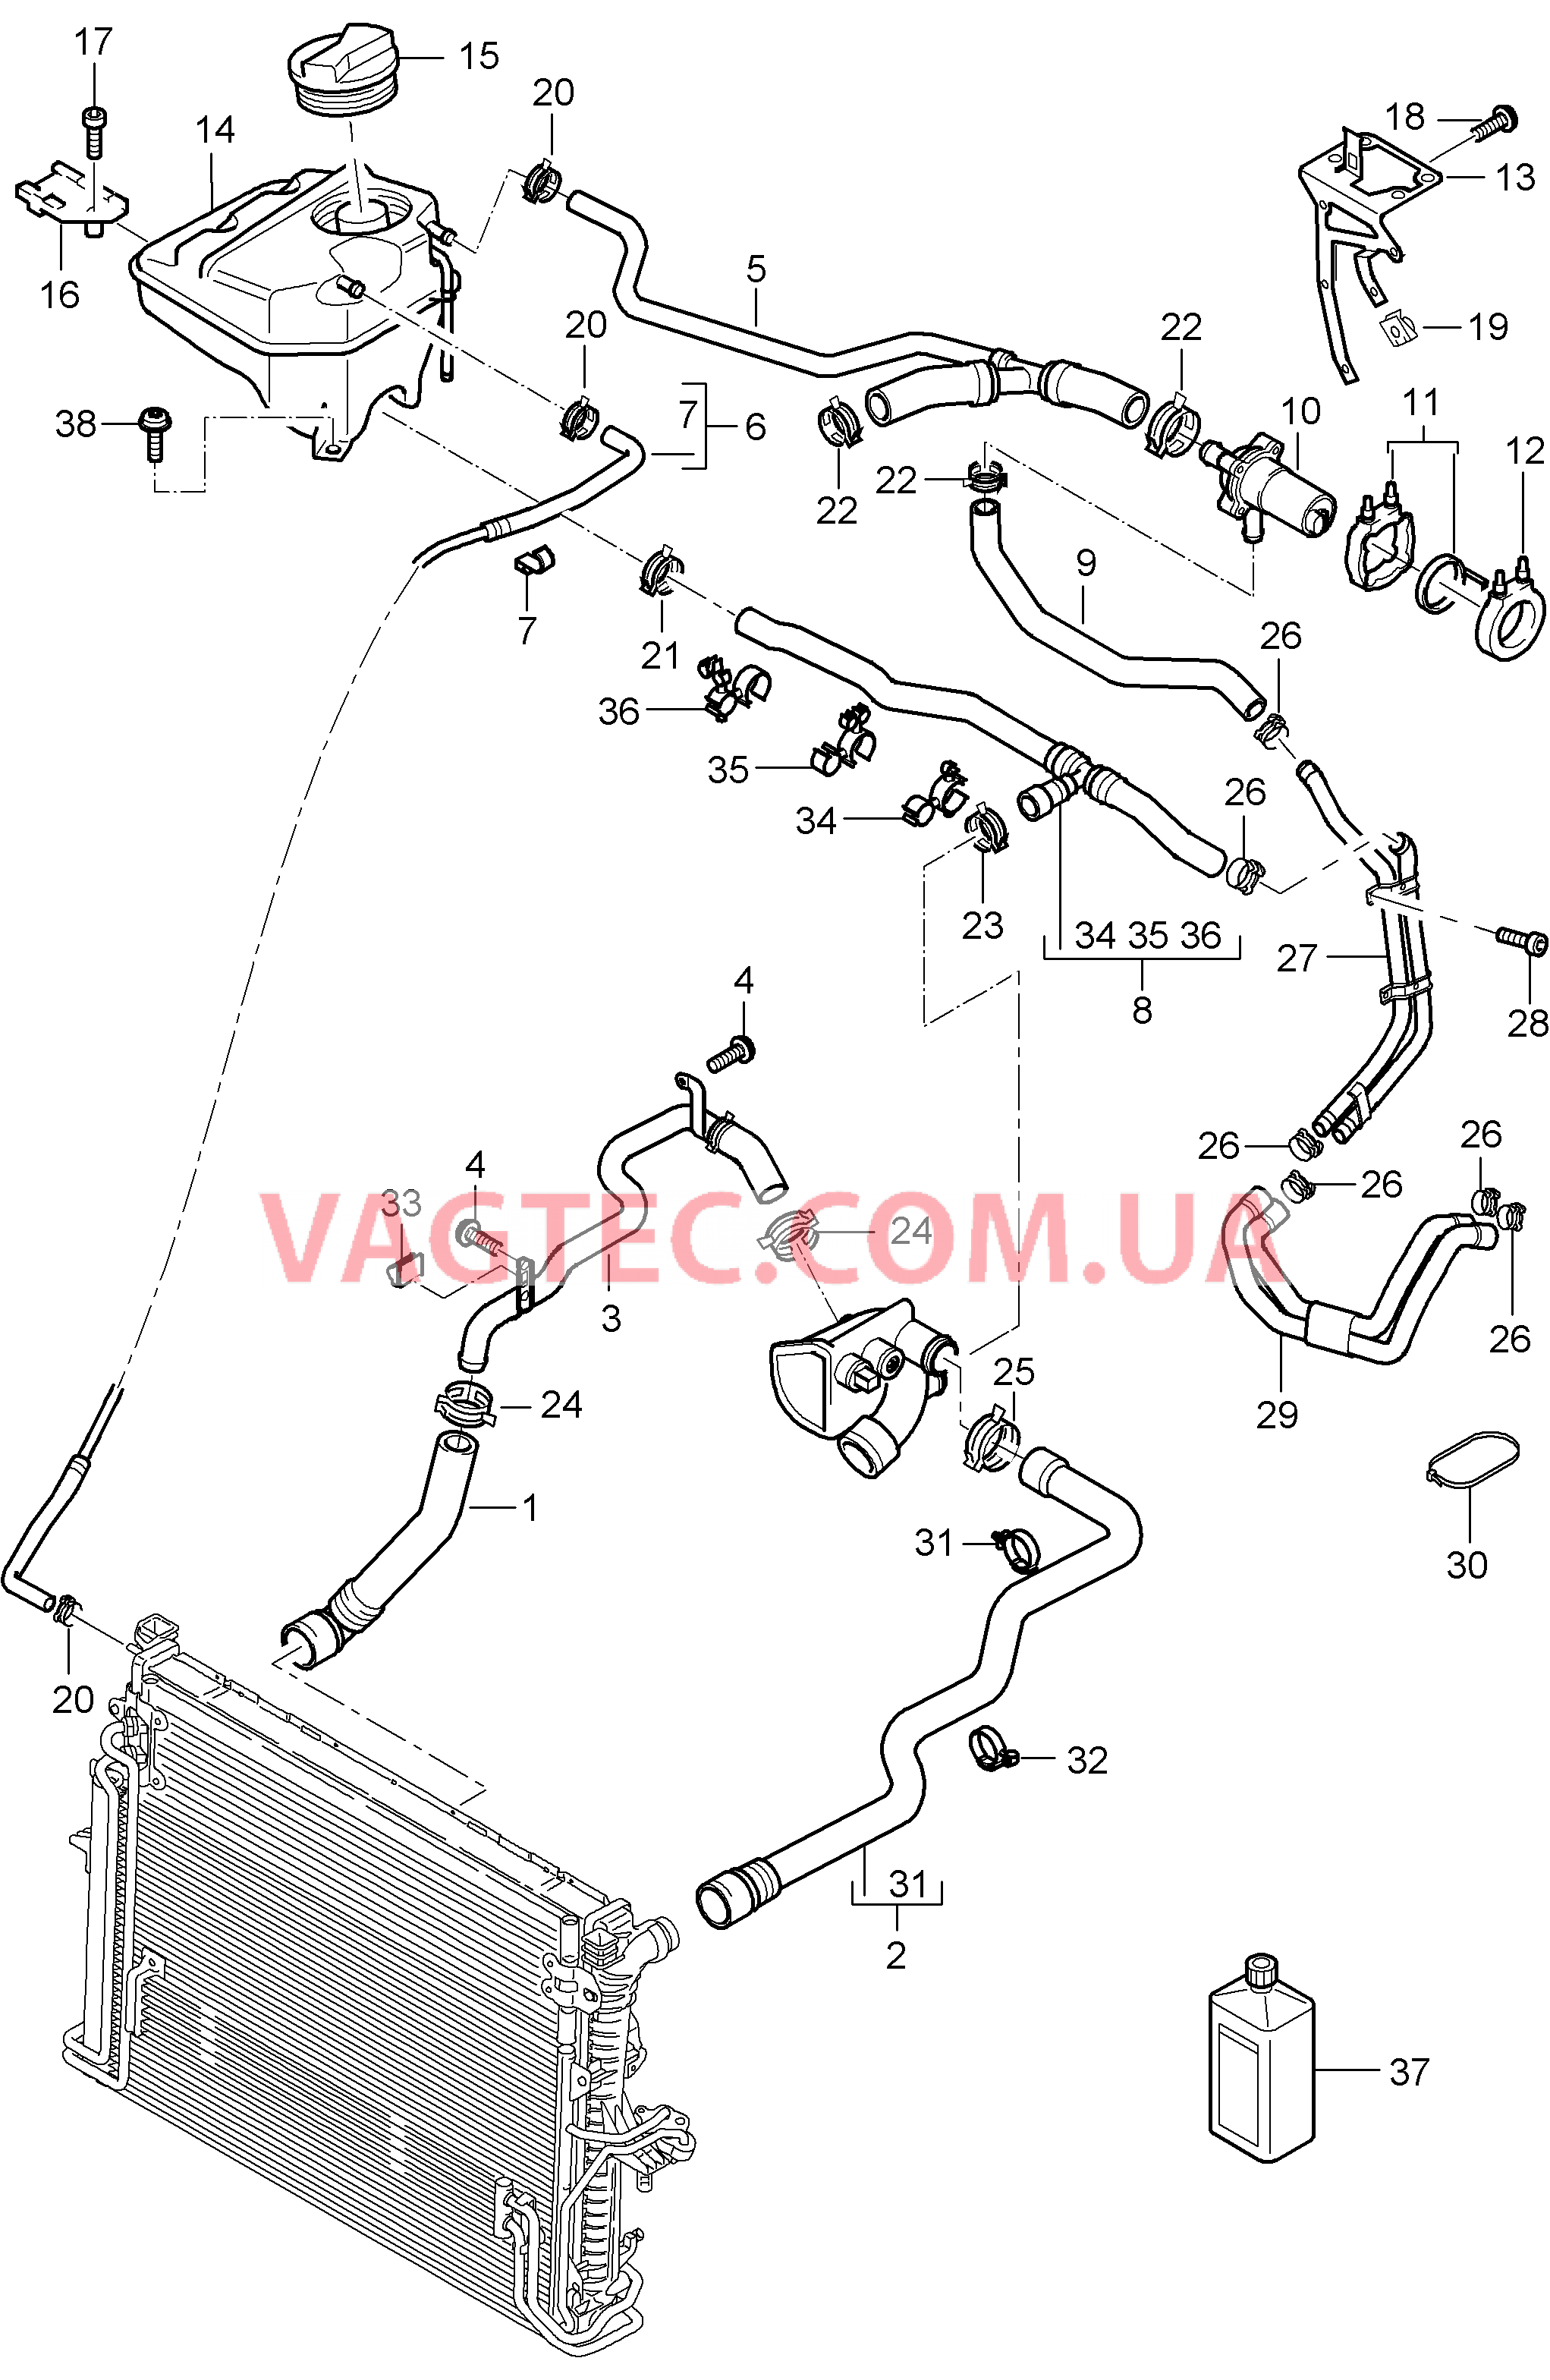 105-027 Водяное охлаждение 4, Водяной резервуар, с, Дополнительный отопитель
						
						ID9J, I7VE/7VL для PORSCHE Cayenne 2003-2006USA